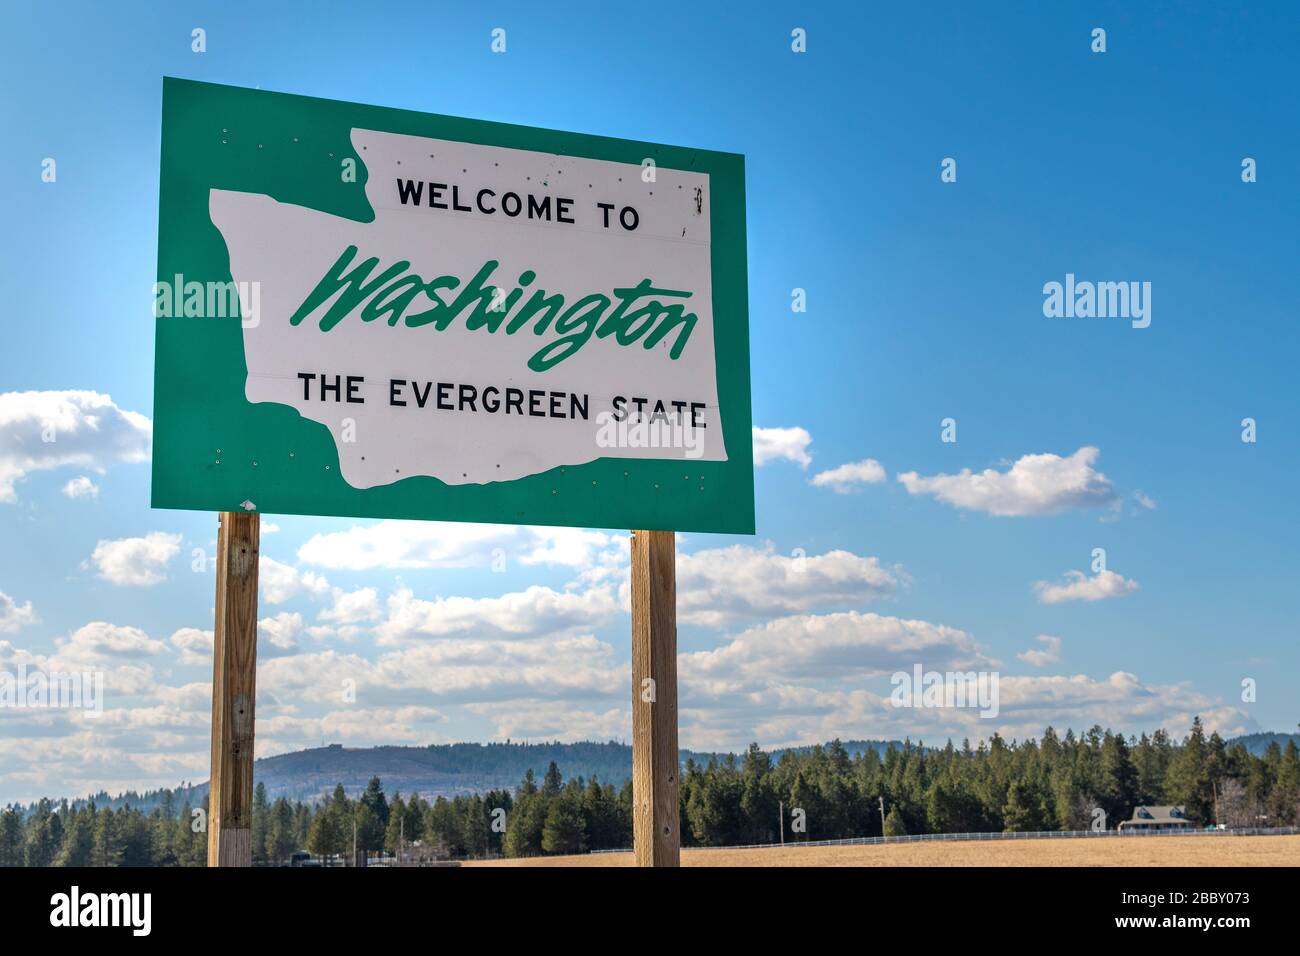 Bienvenido a Washington, el letrero del Estado Evergreen en Spokane, Washington, Estados Unidos. Foto de stock